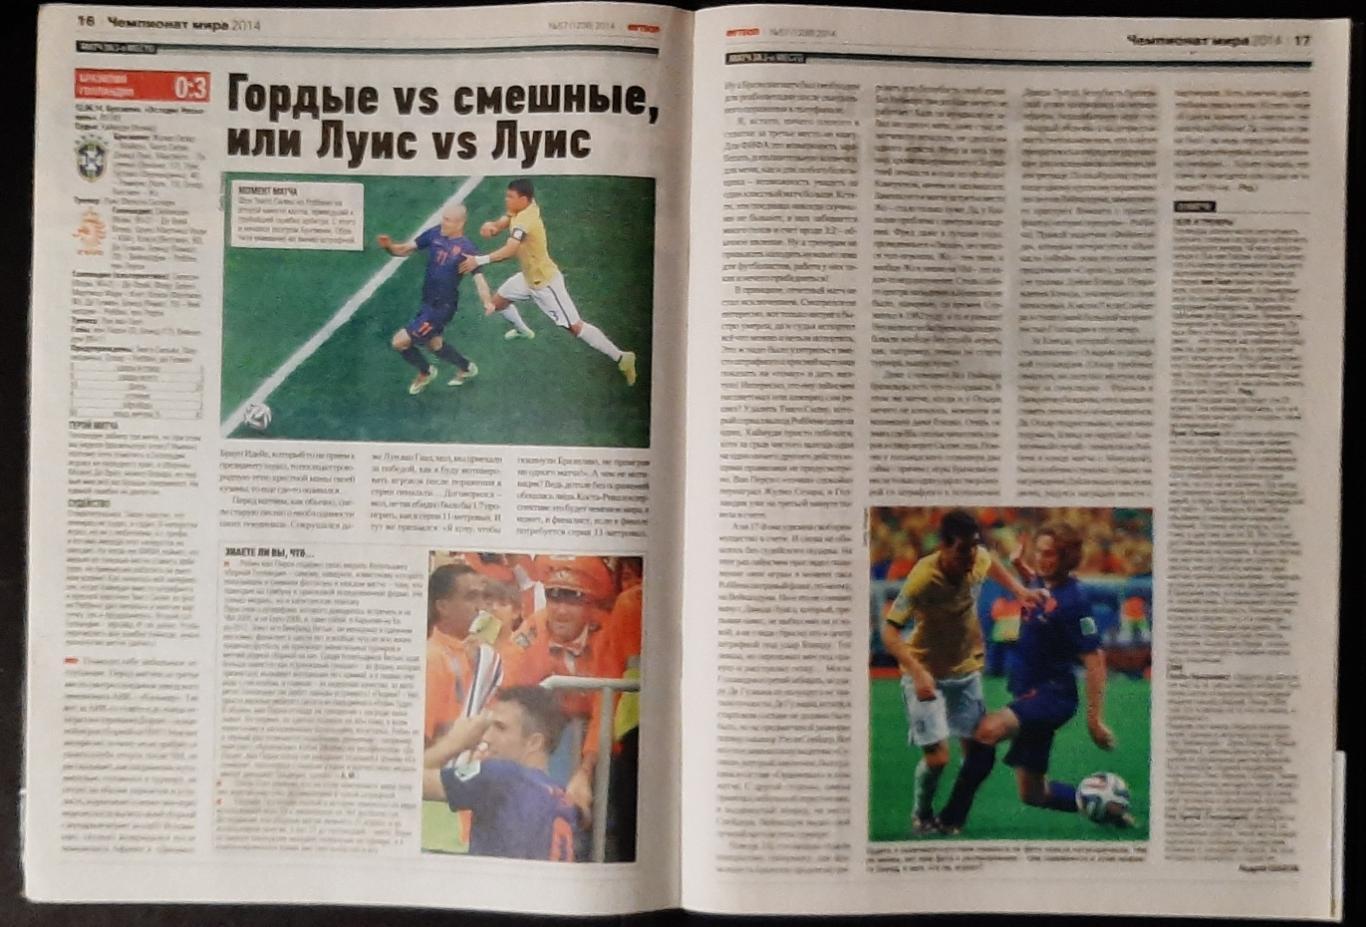 Журнал Футбол #57 2014 Фінал Чемпіонату світу. 4